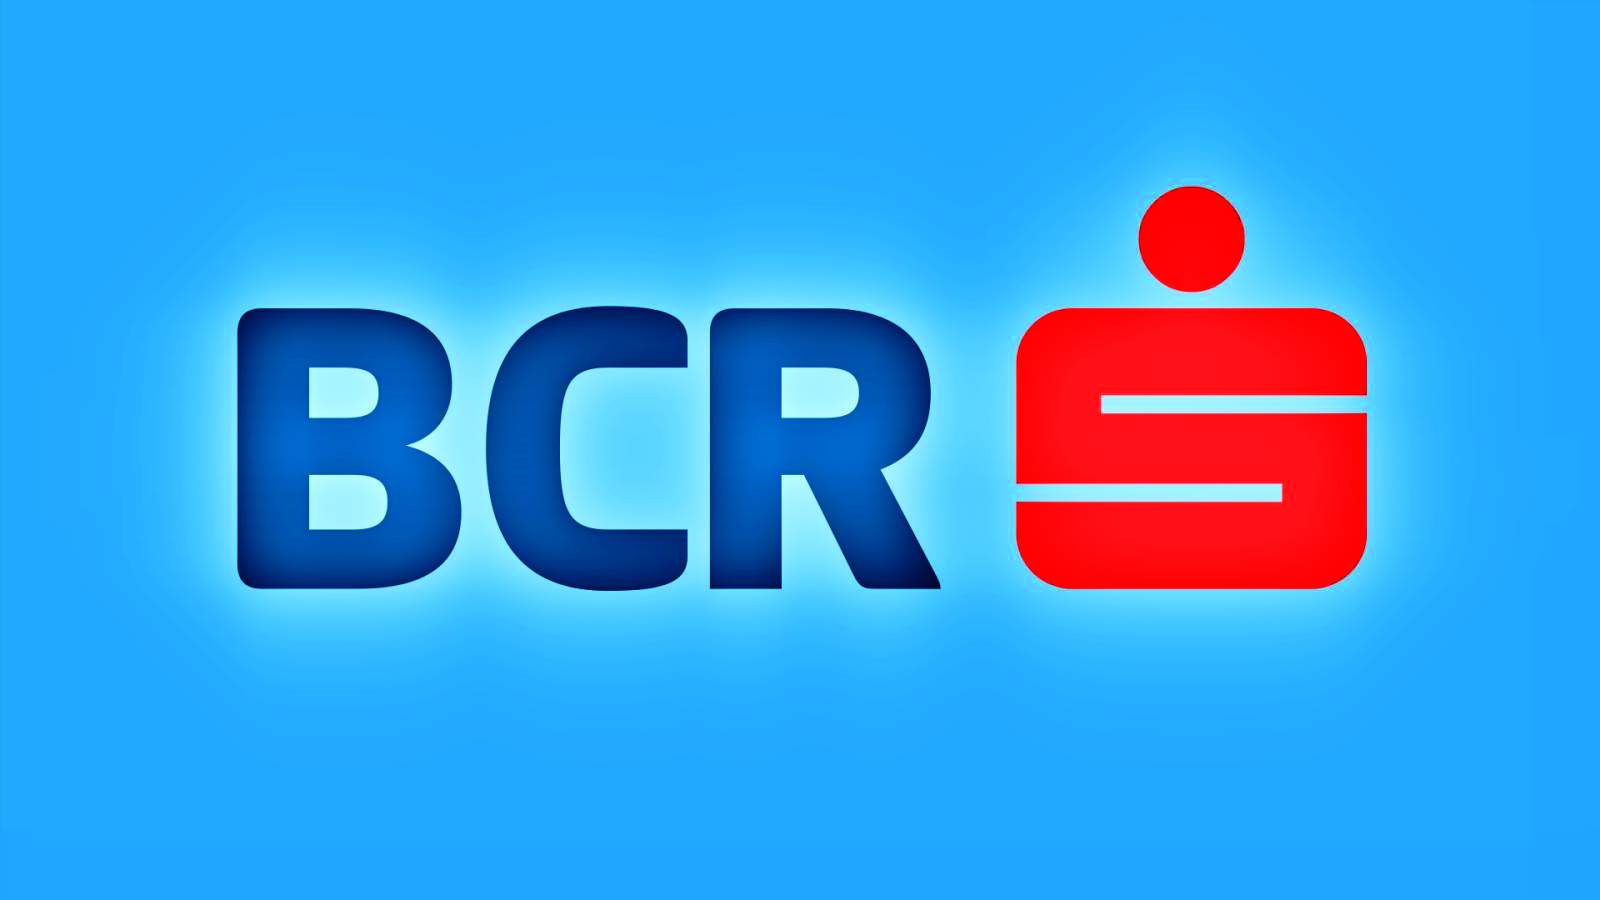 Auswahl von BCR Rumänien